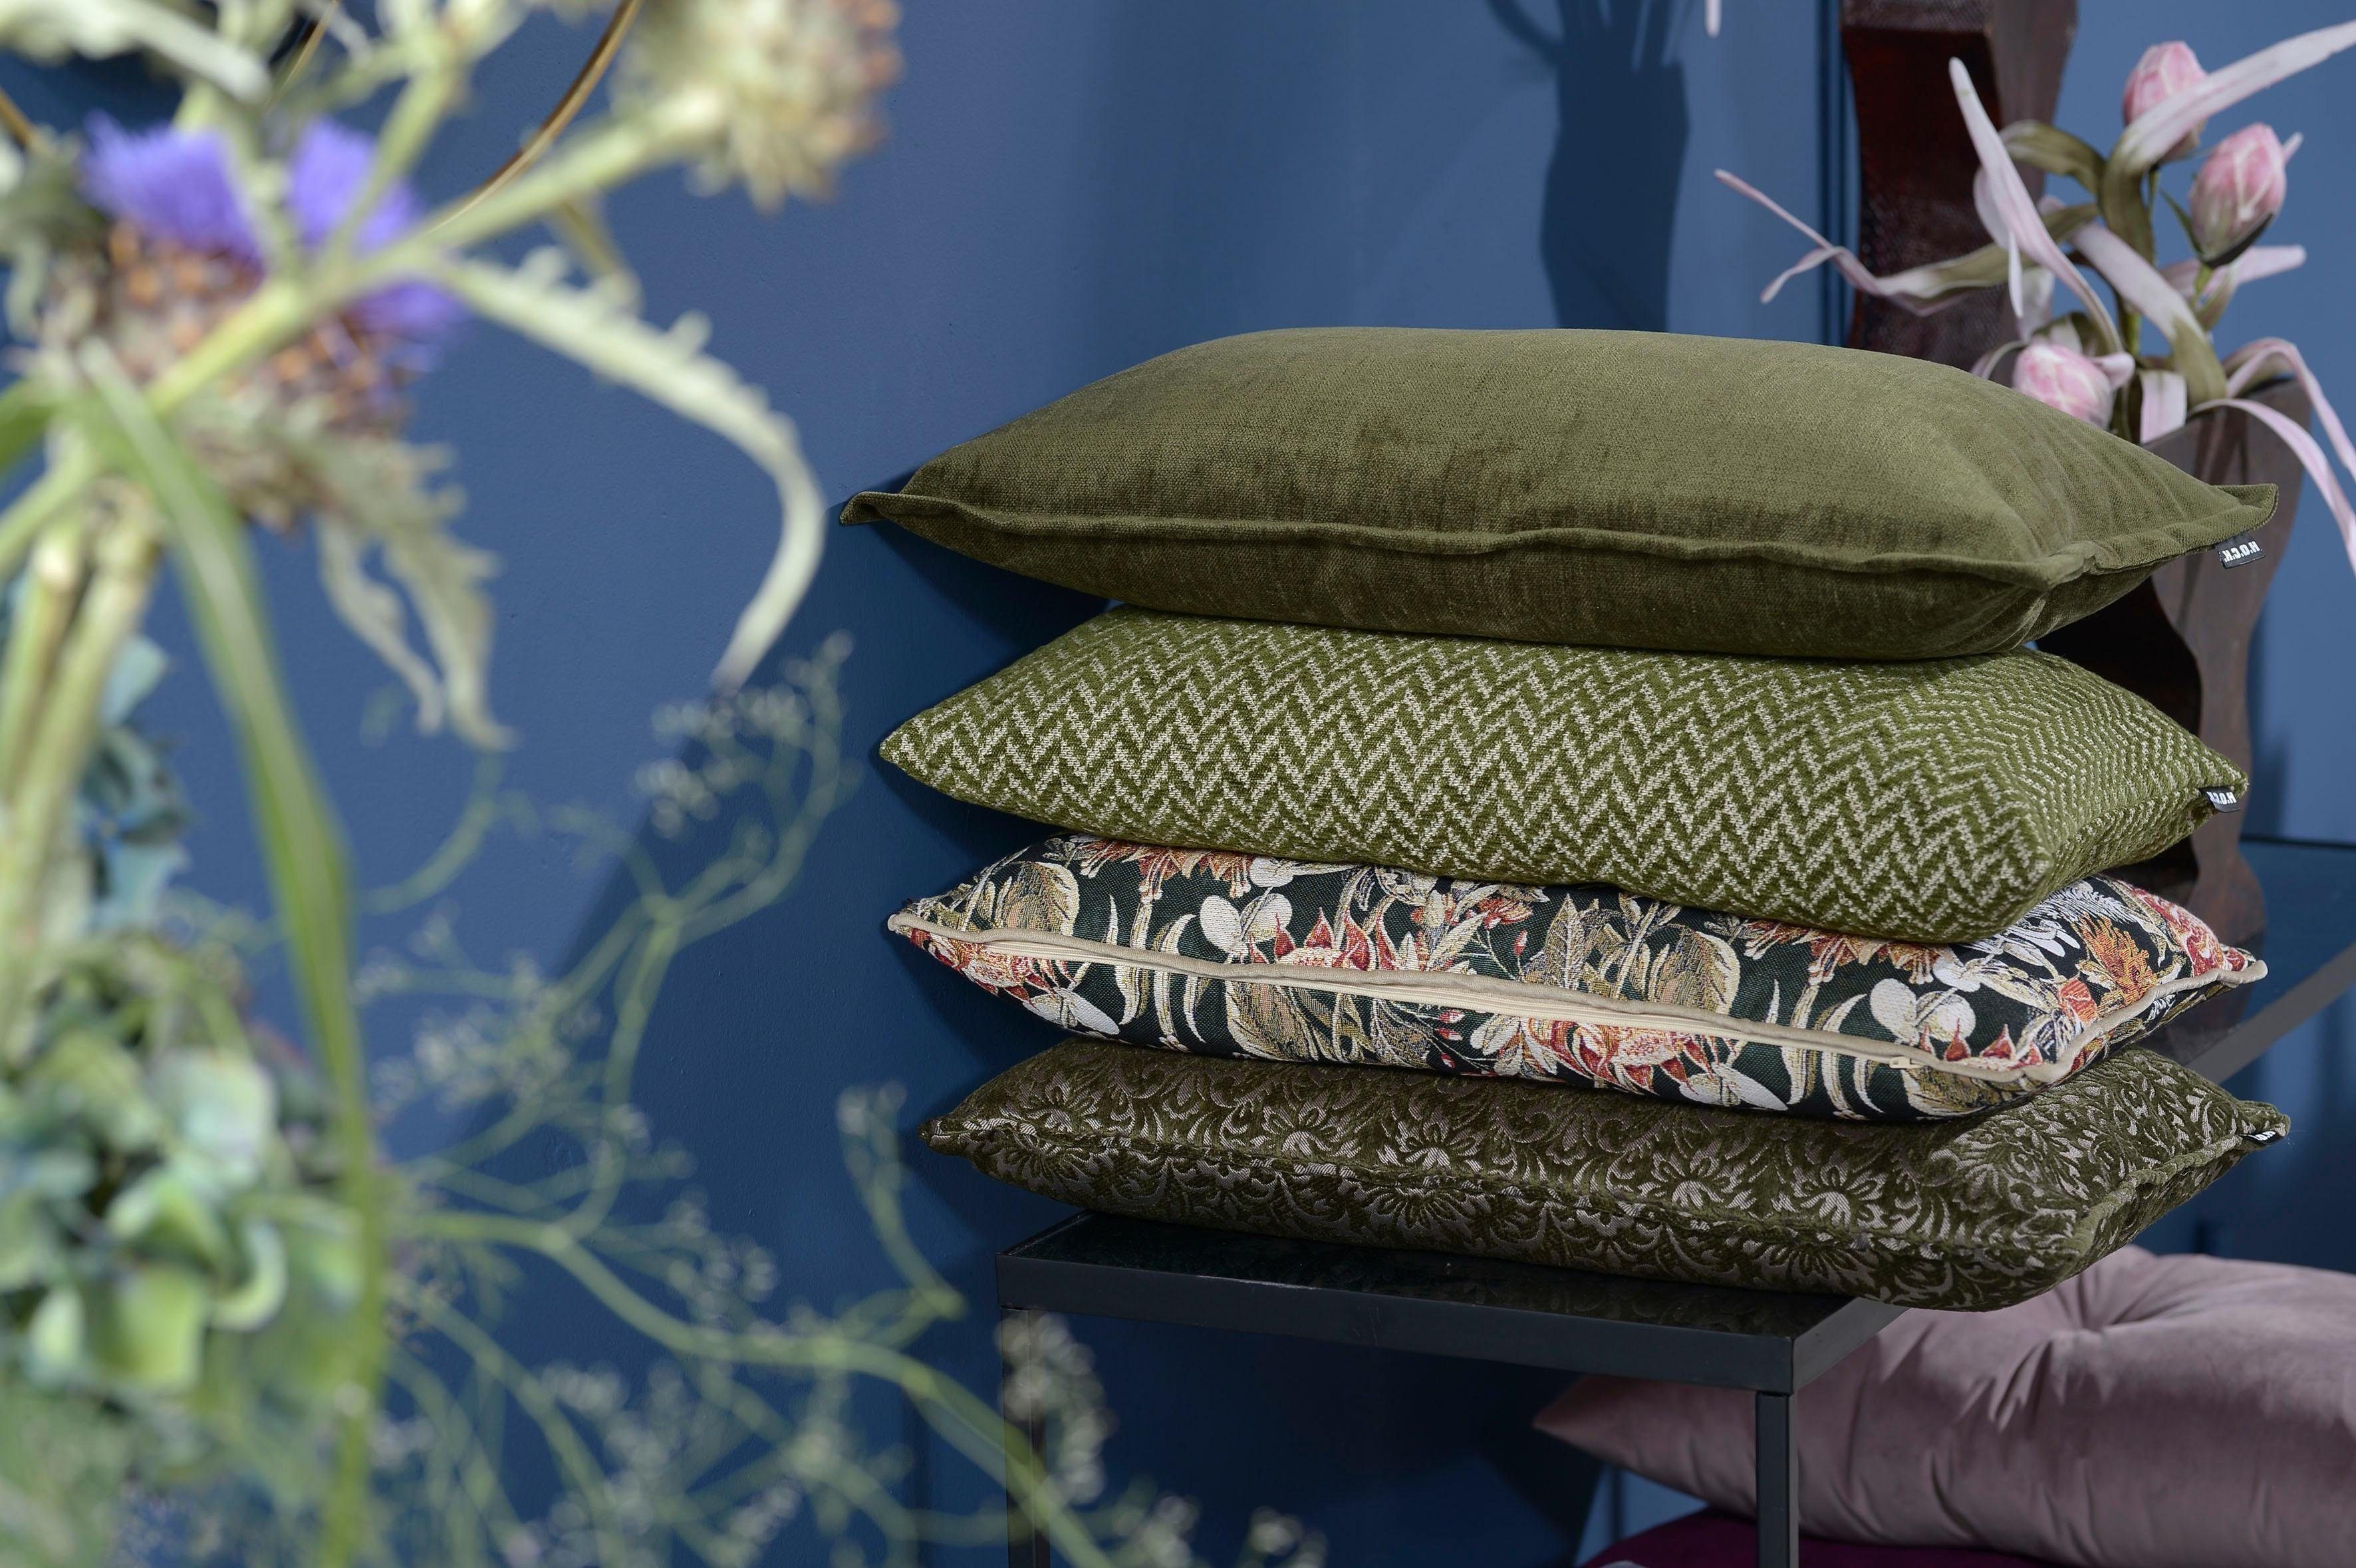 H.O.C.K. Dekokissen Mohogany, mit Kissenhülle 1 Füllung, floralem Muster, Stück mit olivgrün/grün